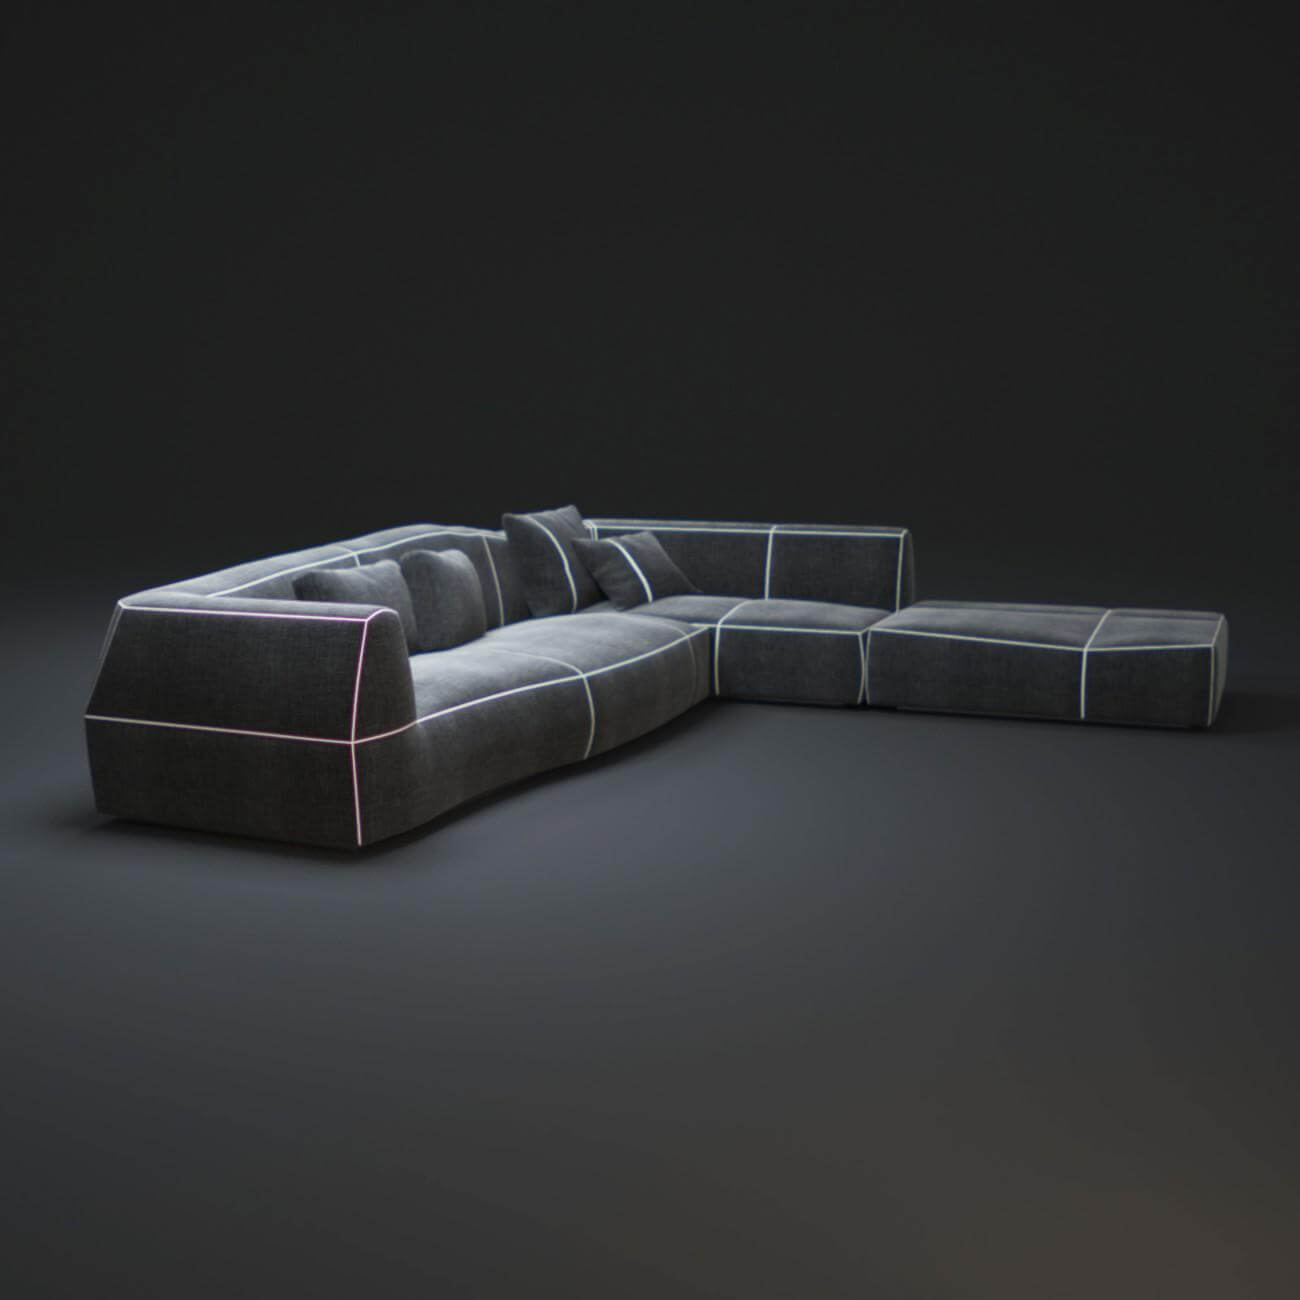 Unique sofa Designs